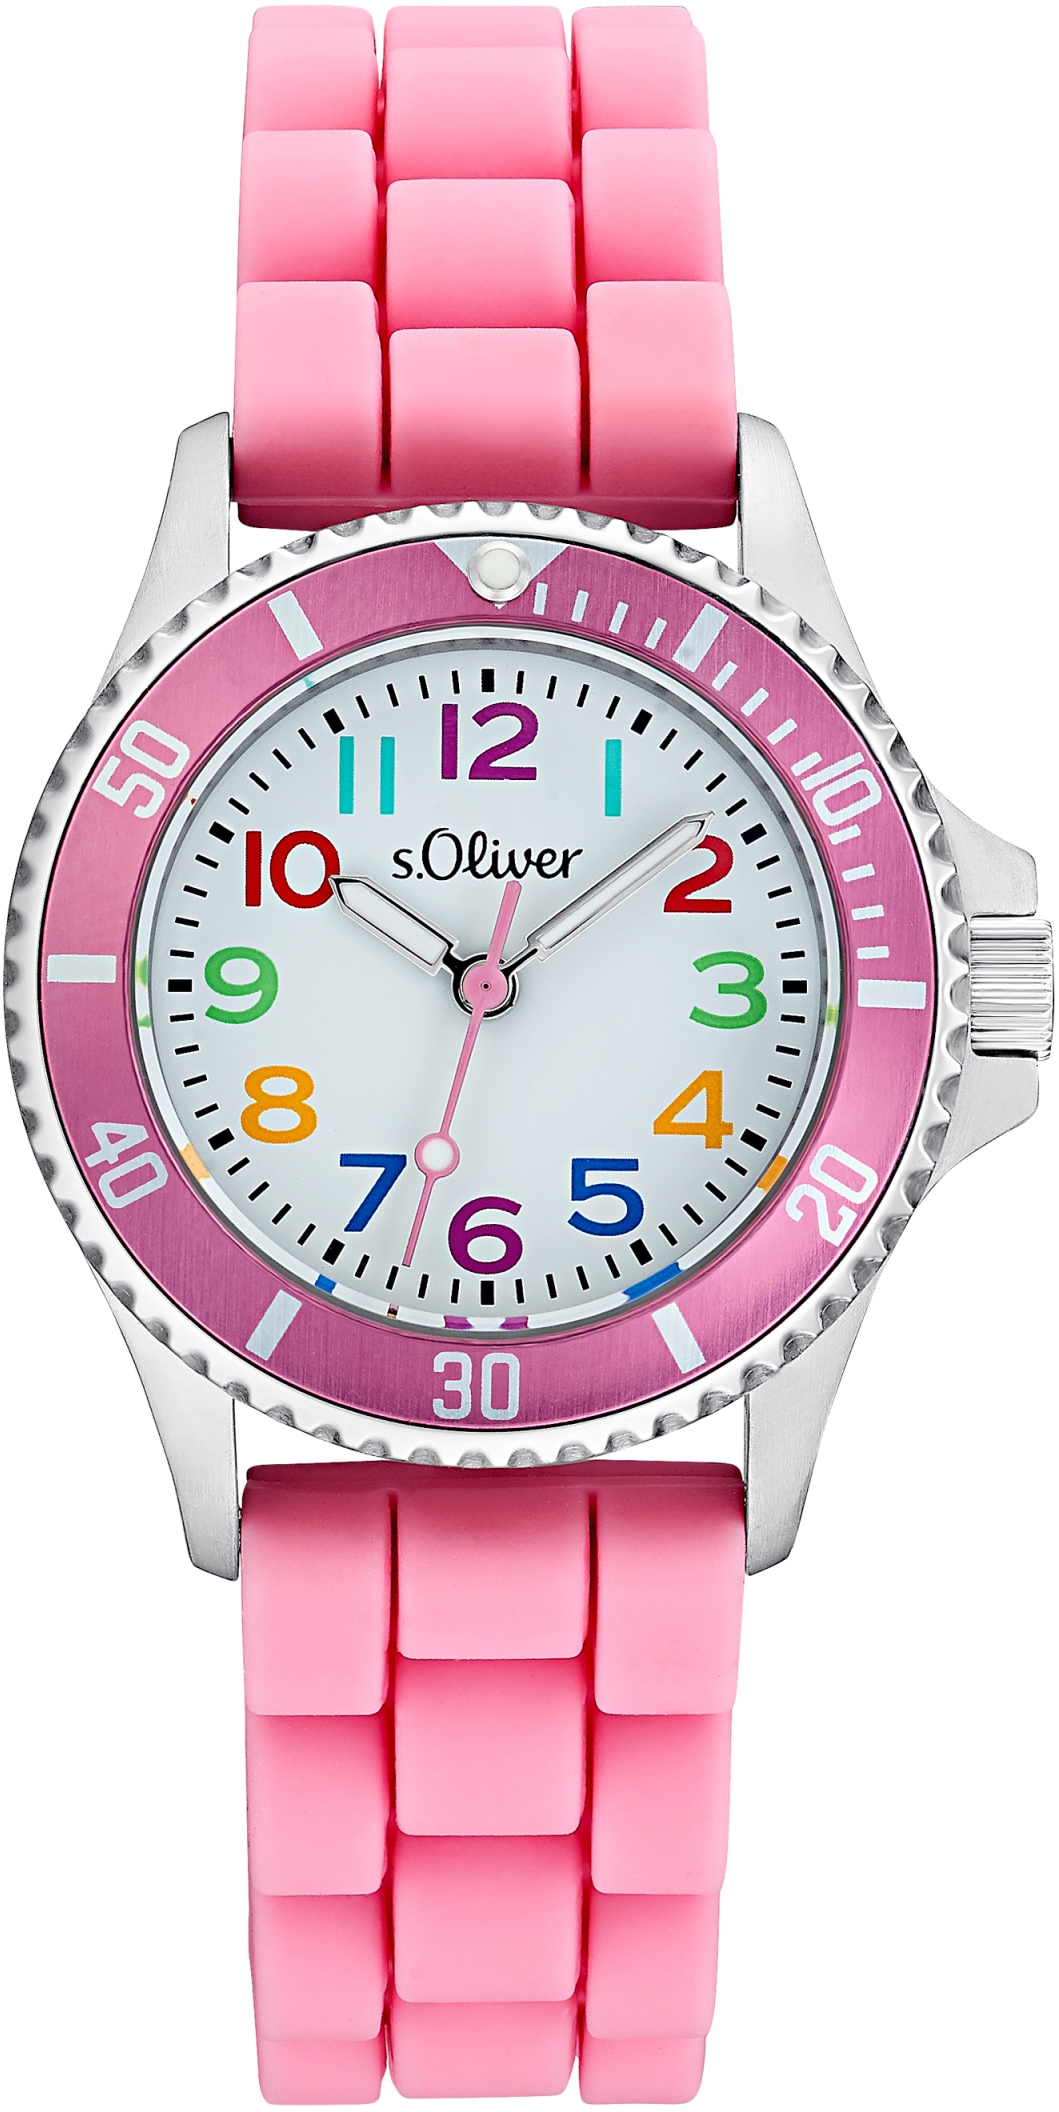 s.Oliver Quarzuhr »2033505«, Armbanduhr, Kinderuhr, Mädchenuhr, ideal auch als Geschenk